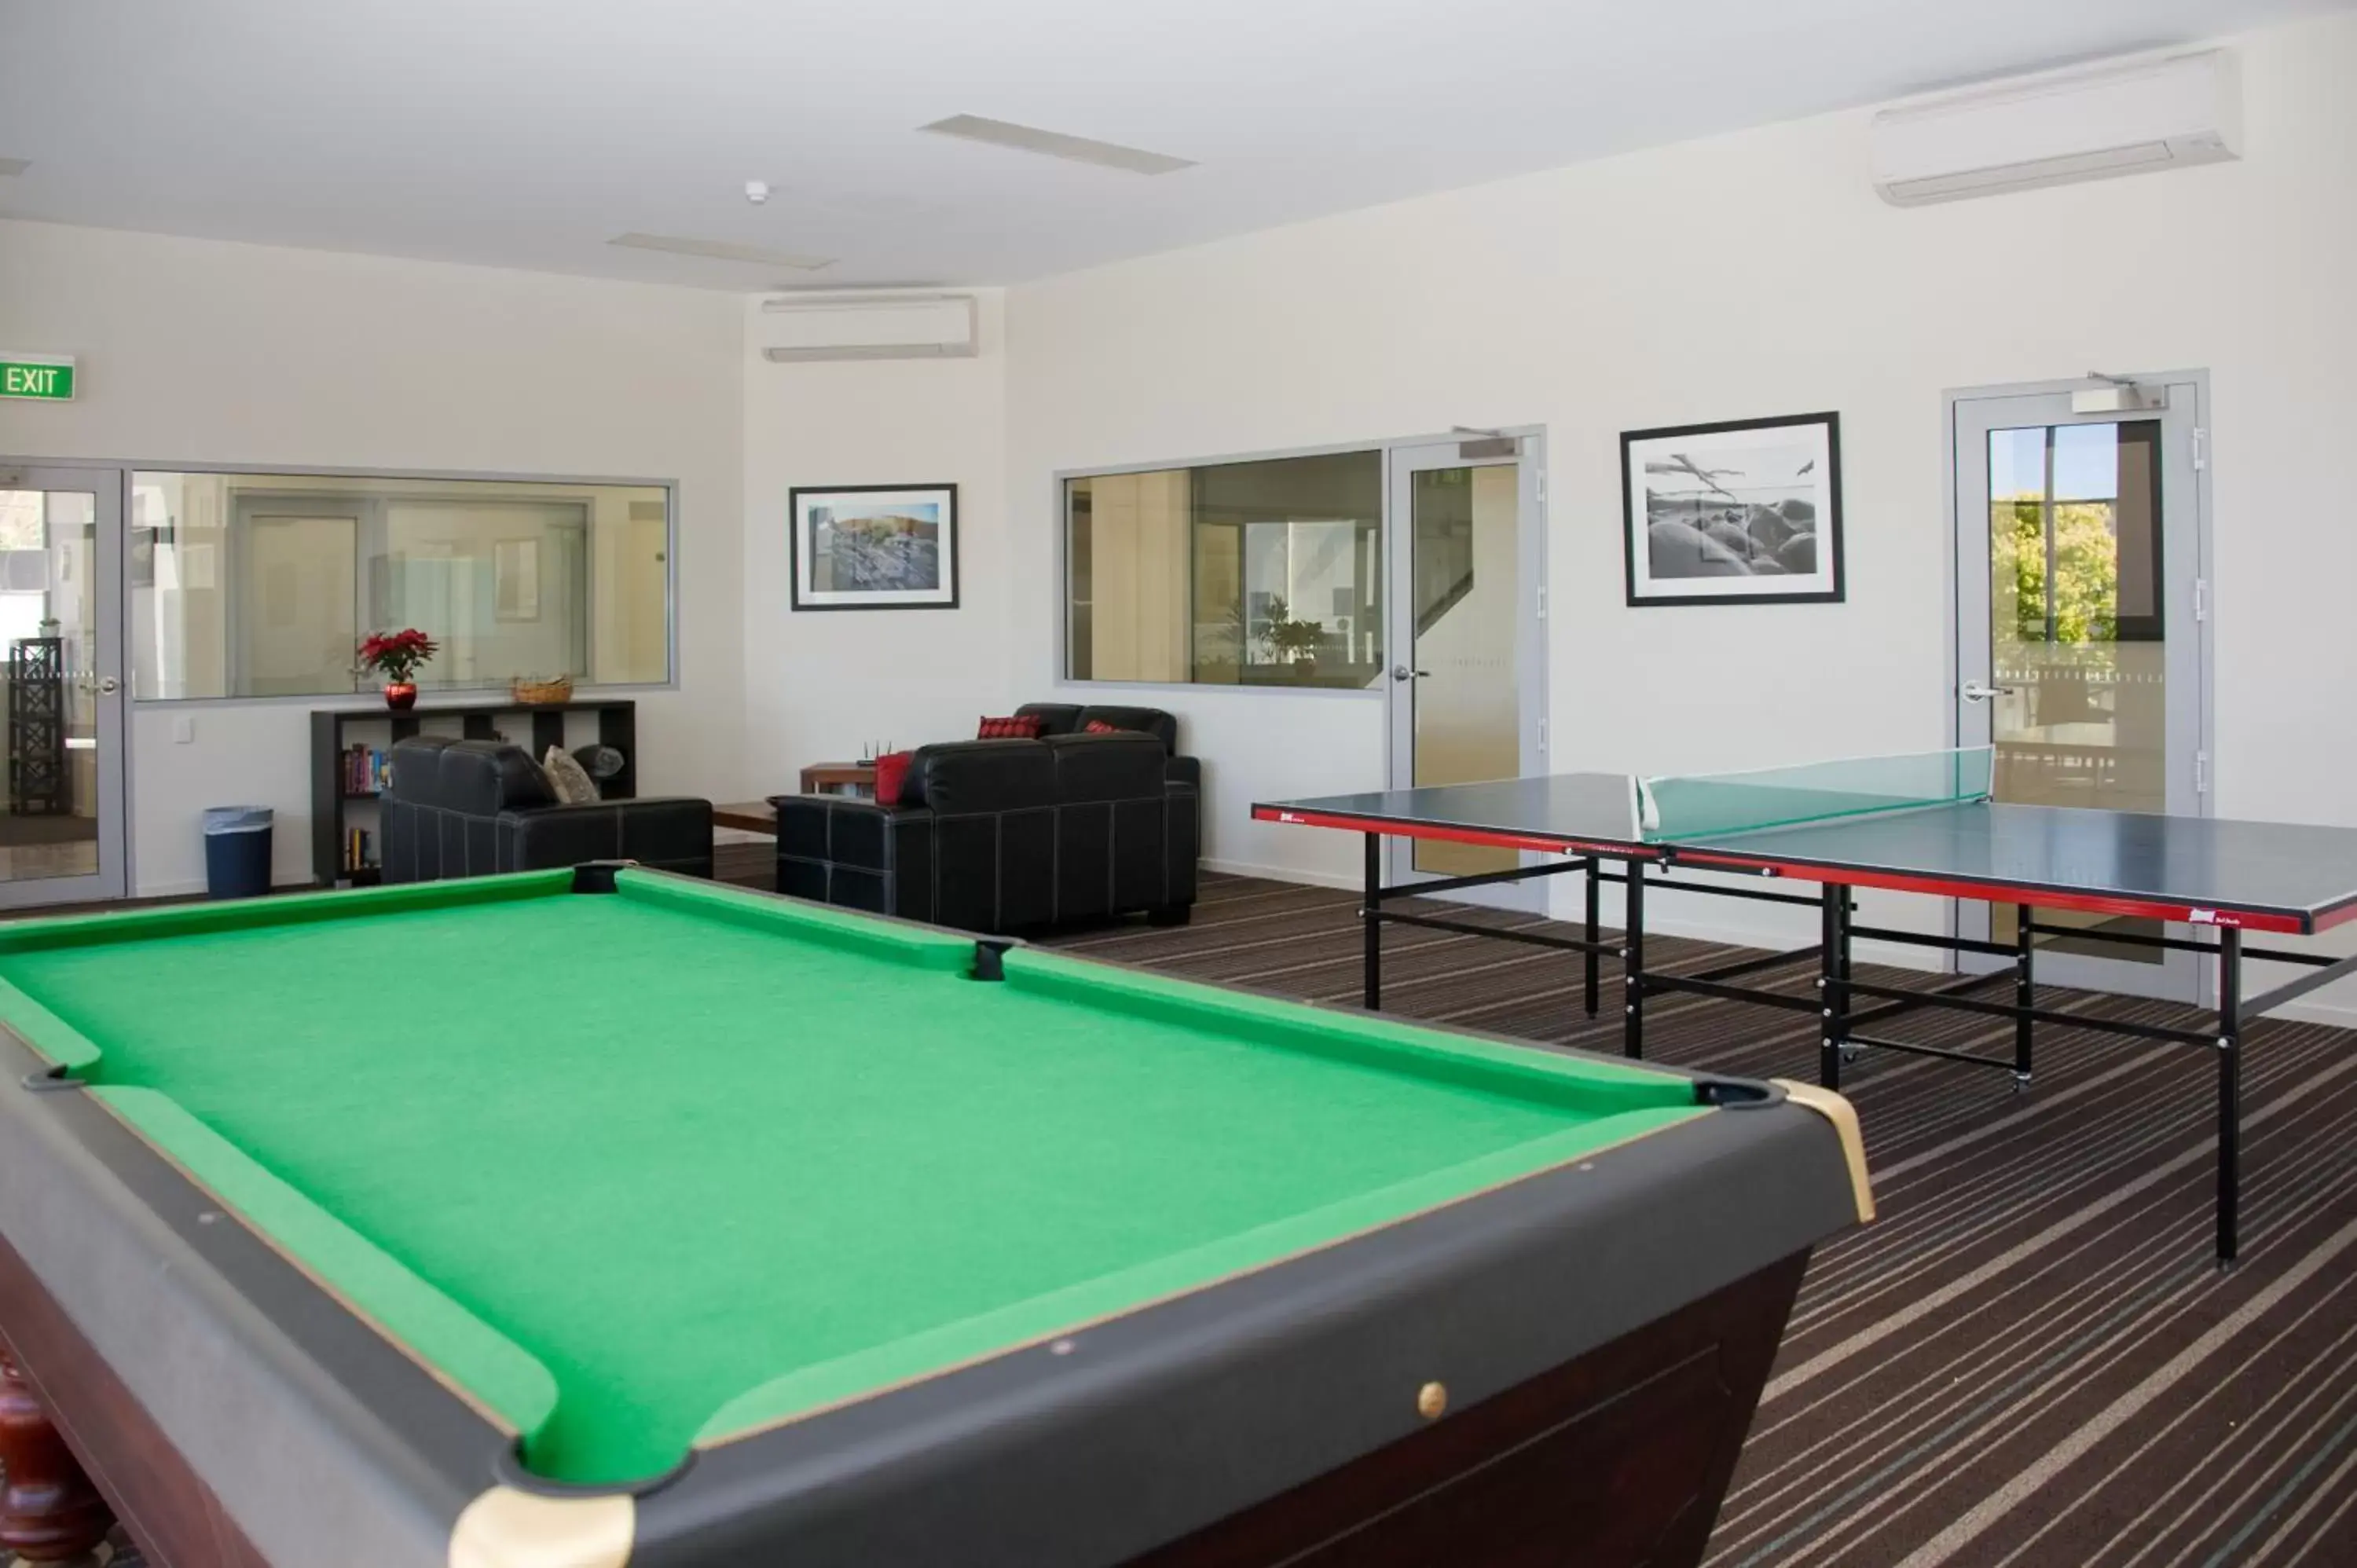 Game Room, Billiards in Bay View Villas